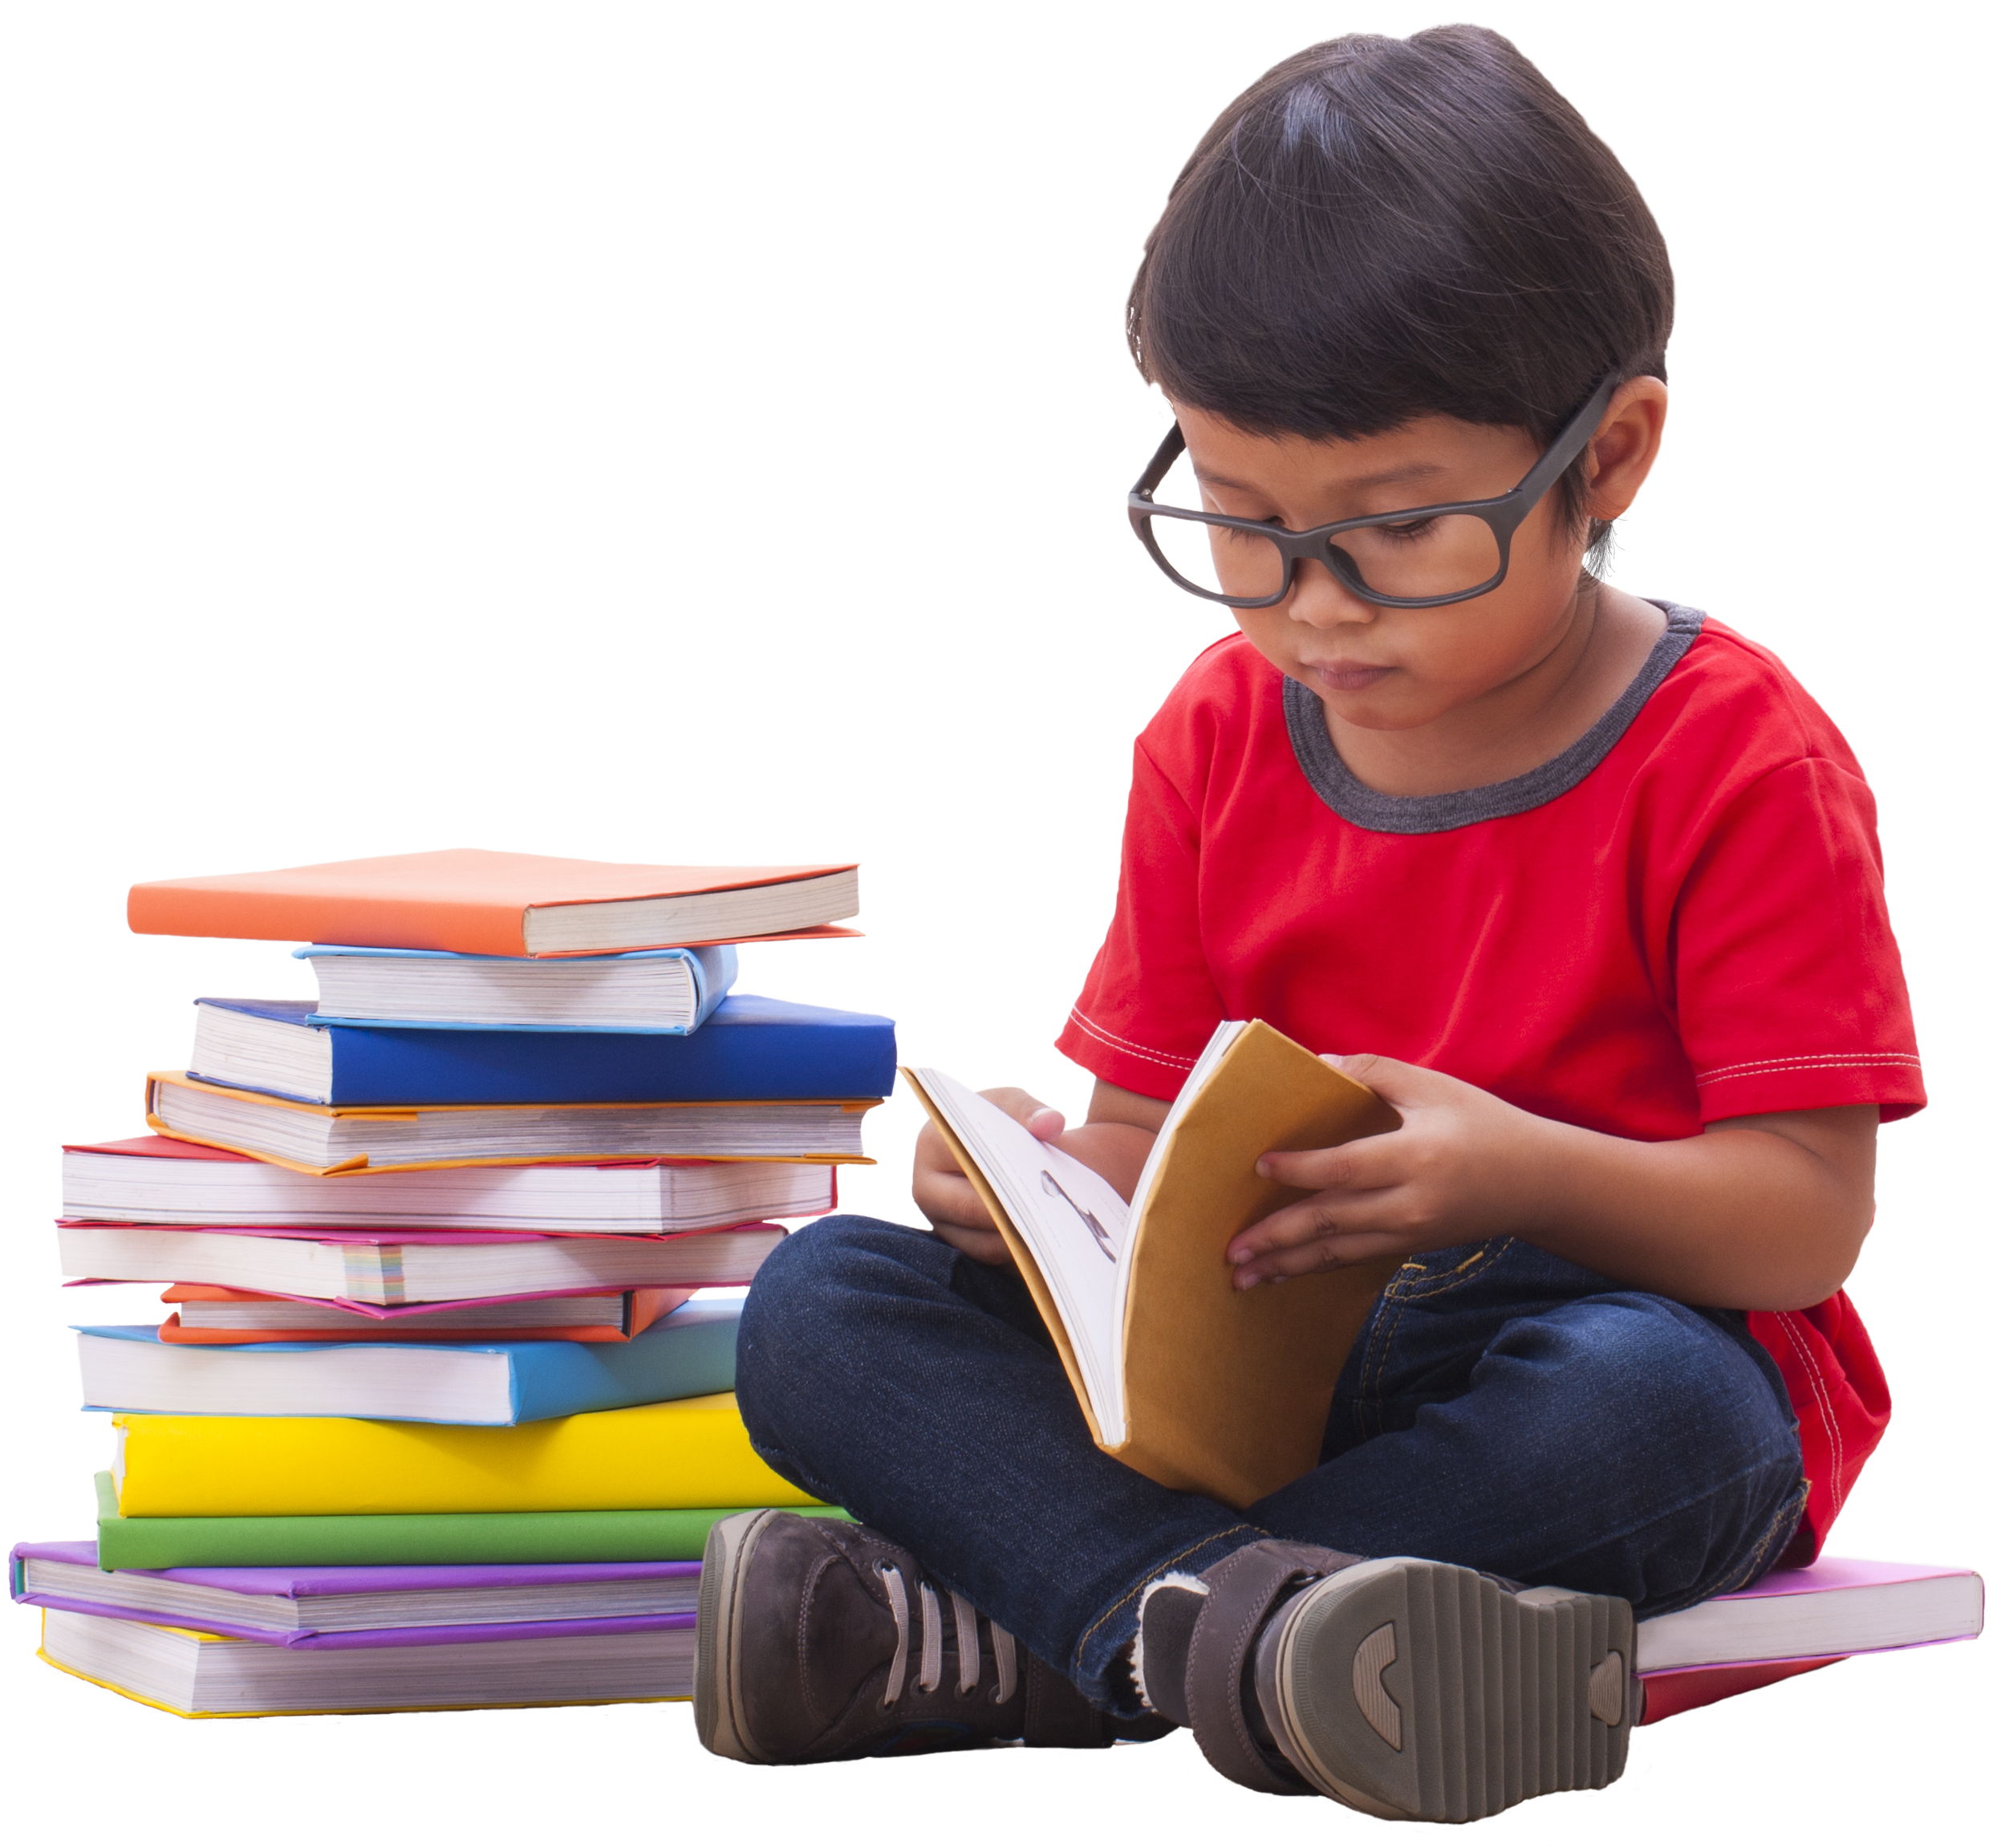 Png reader. Чтение. Детское чтение. Мальчик сидит на книгах без фона. Ребенок рассматривает книжку.